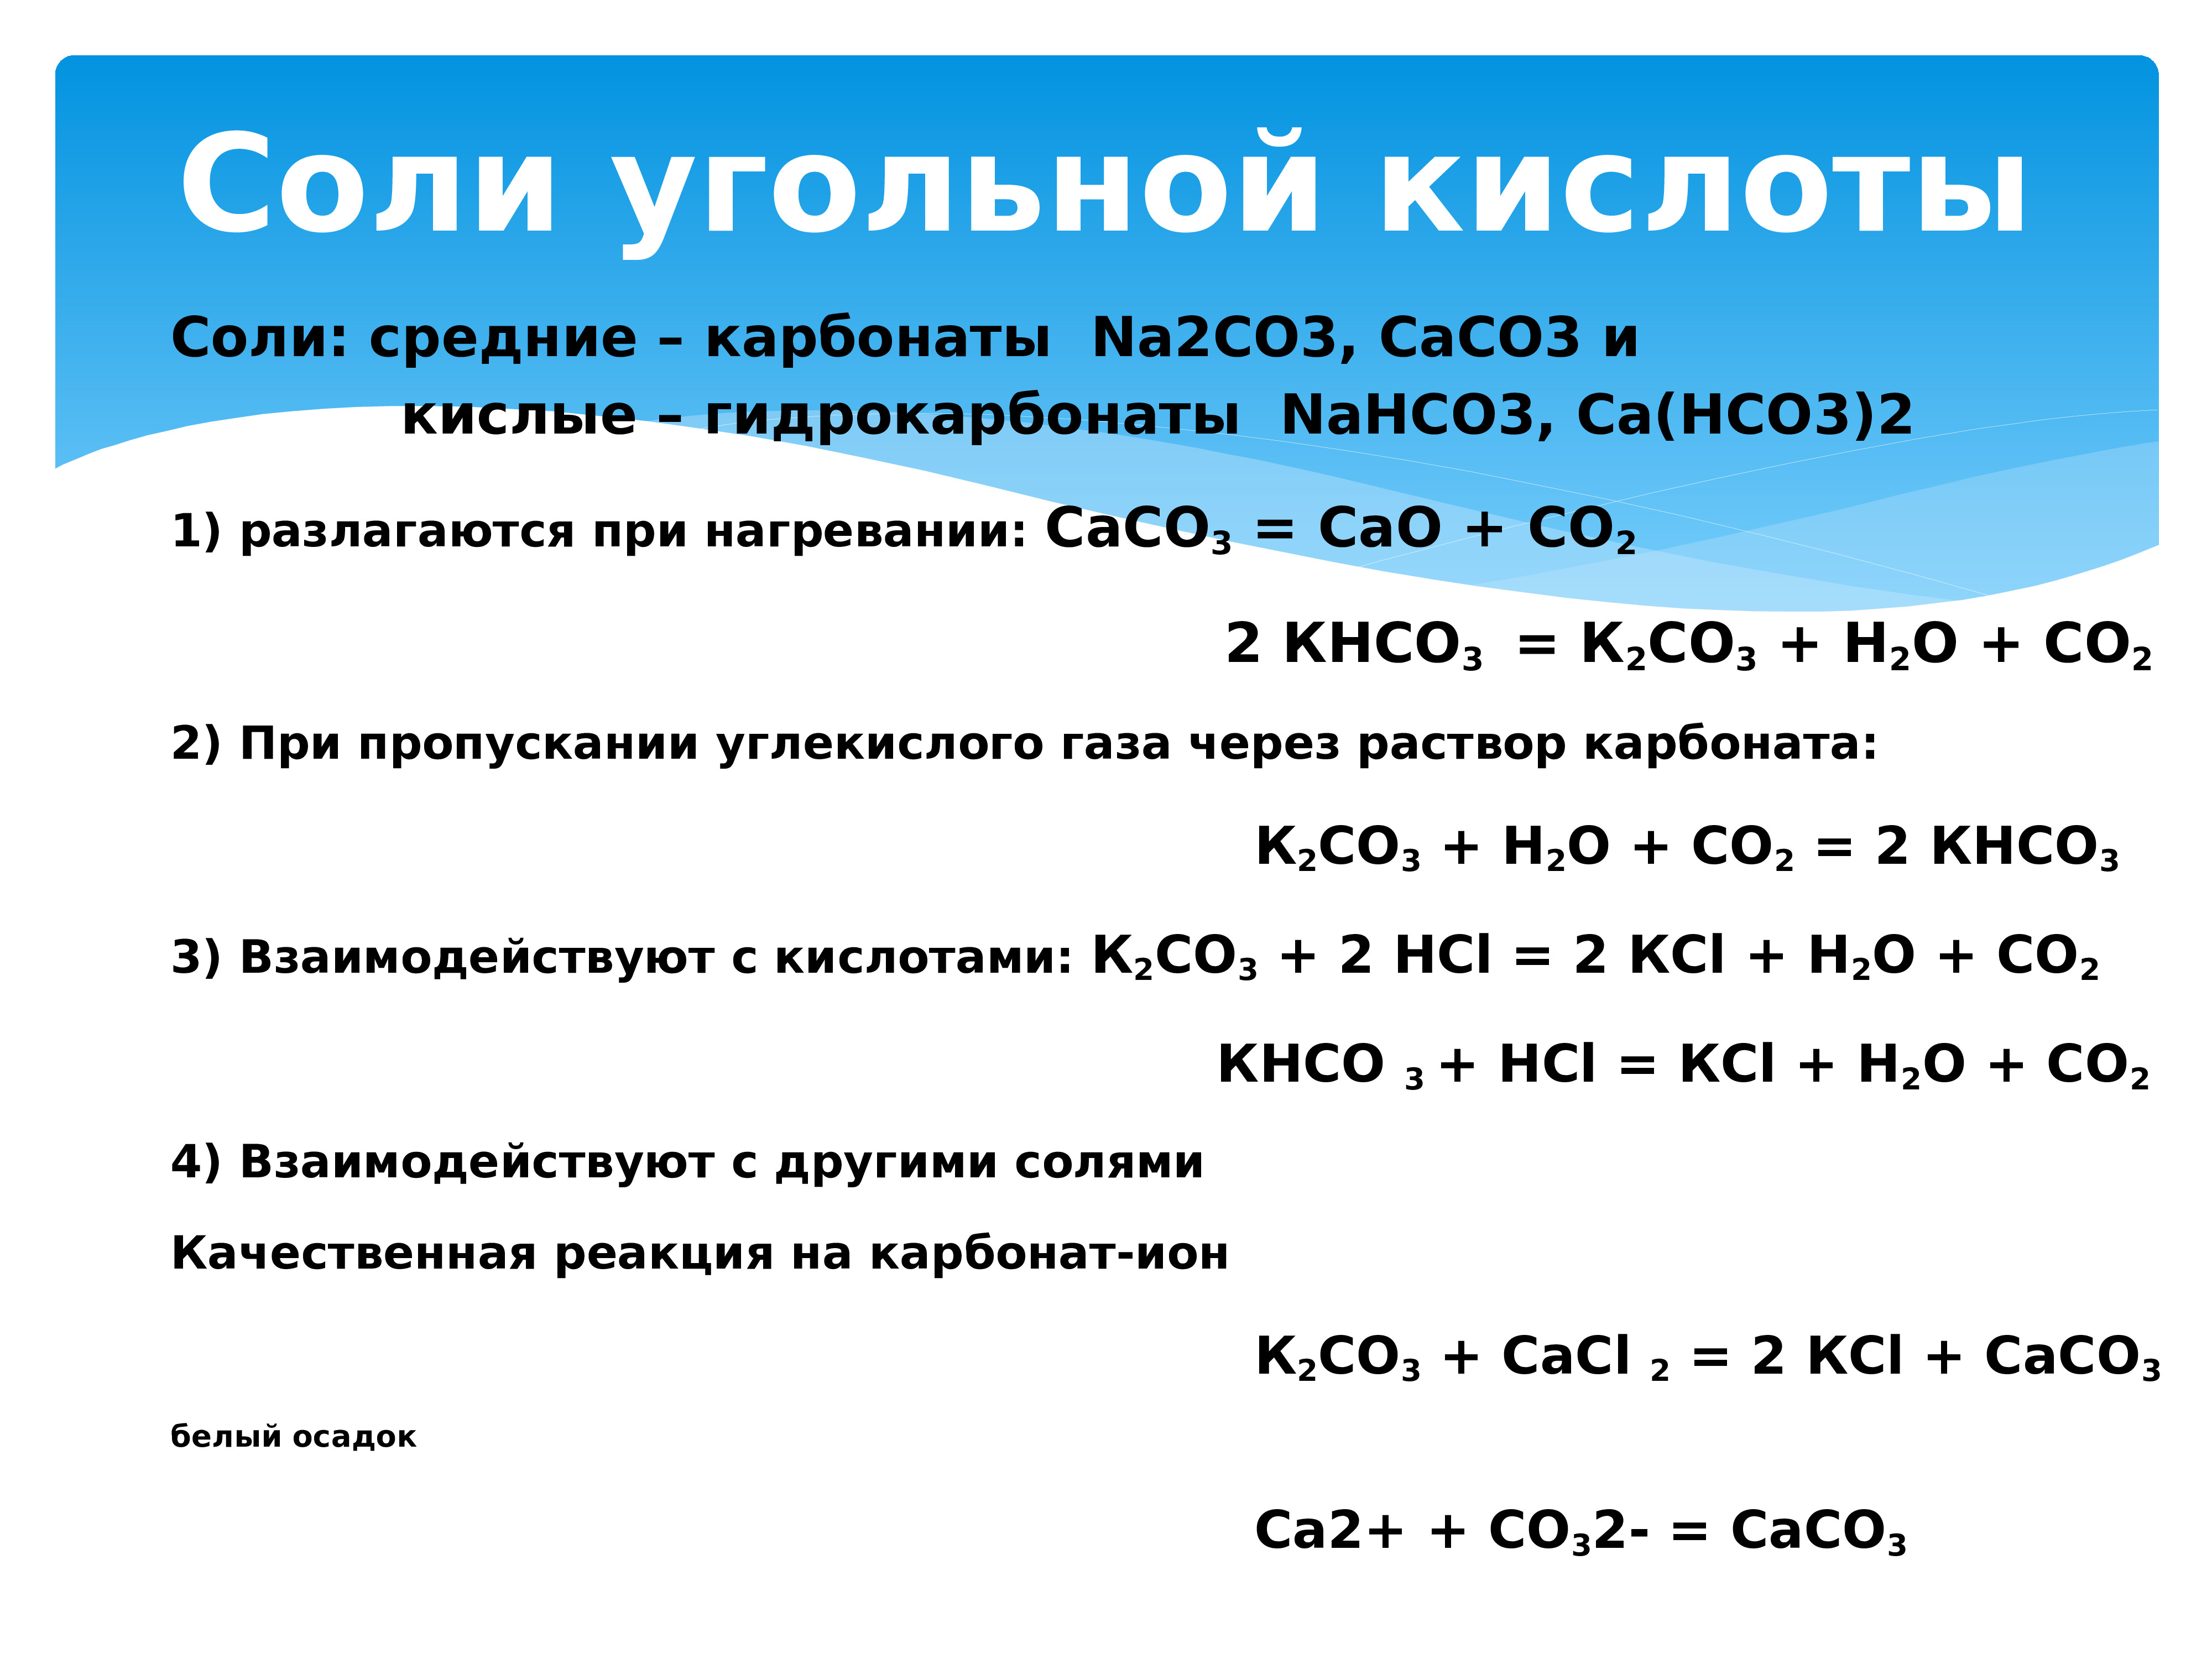 Углекислый газ основной оксид. Разложение карбонатов и гидрокарбонатов при нагревании. Реакции с углекислым газом. Соли угольной кислоты. Разложение углерода.